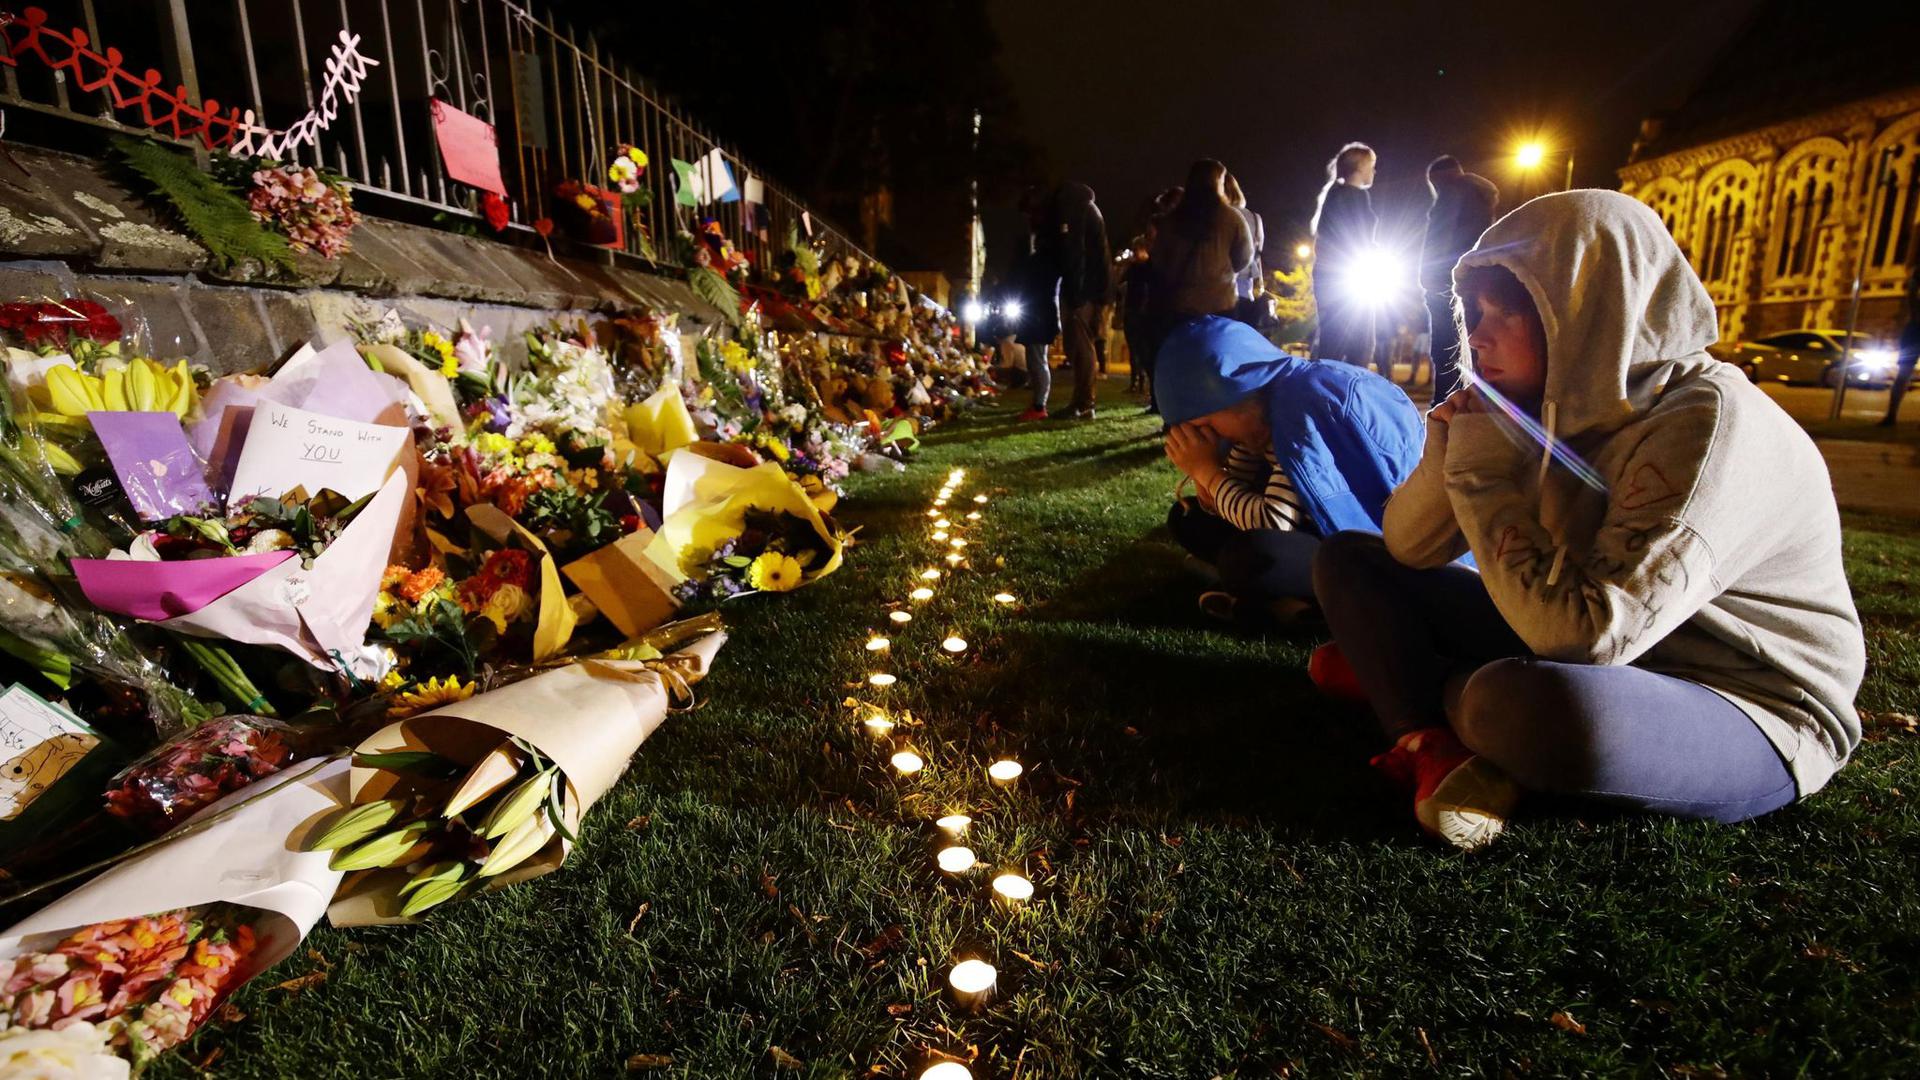 Menschen trauern vor Kerzen und Blumen, die in Gedenken an die Opfer der Anschläge auf zwei Moscheen in Christchurch, Neuseeland niedergelegt wurden.